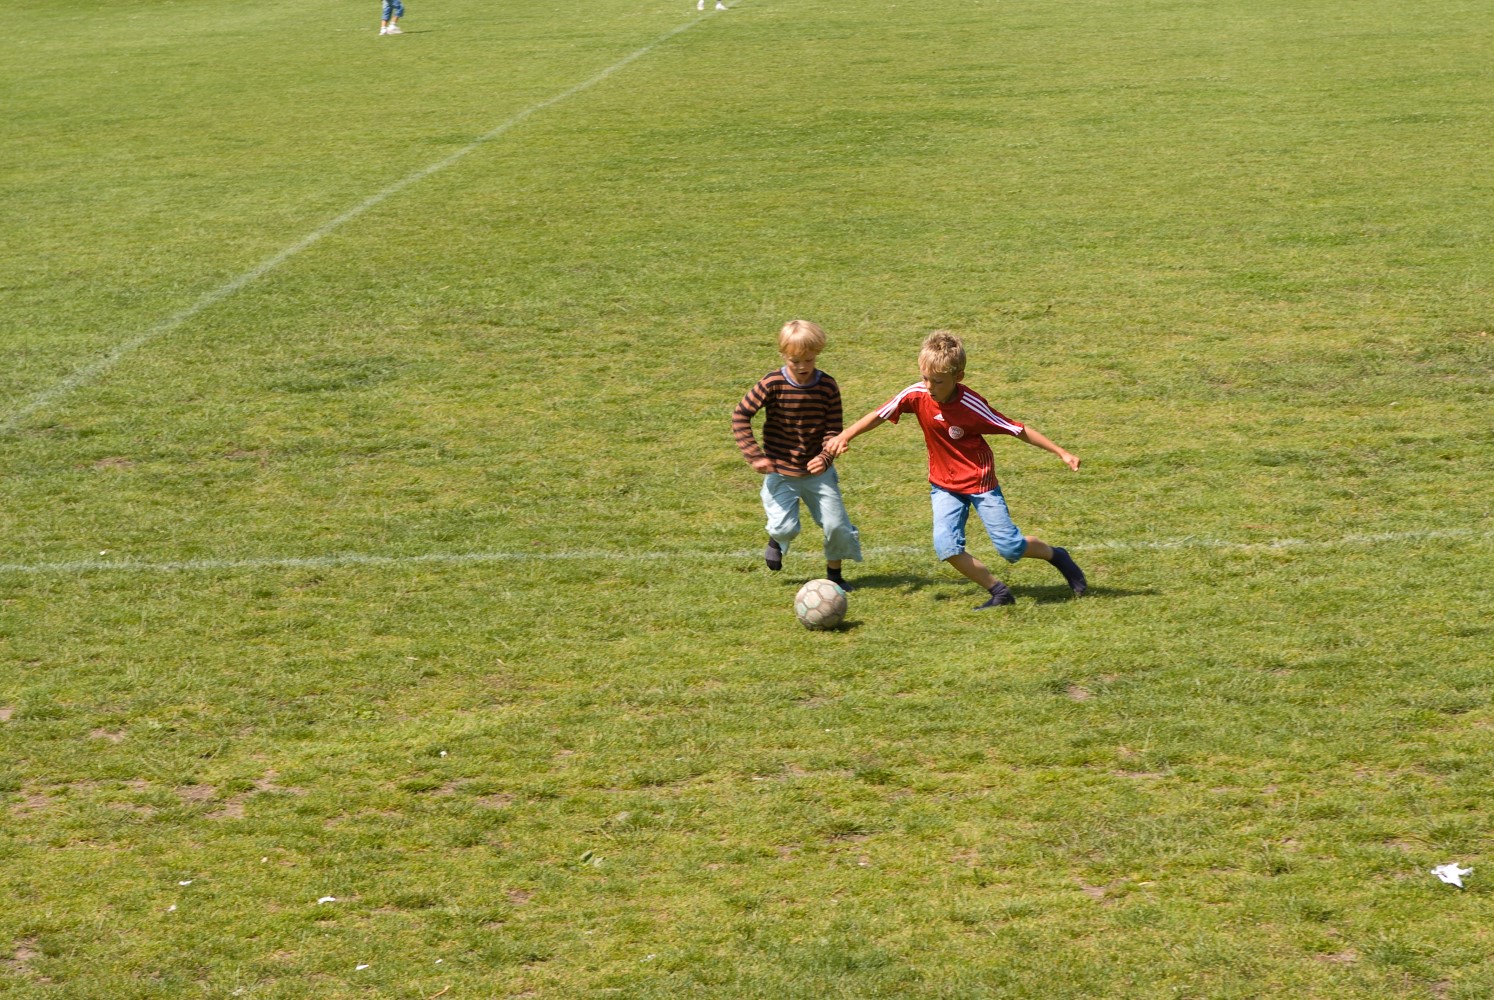 Nødebo Skole, to drenge der spiller fodbold